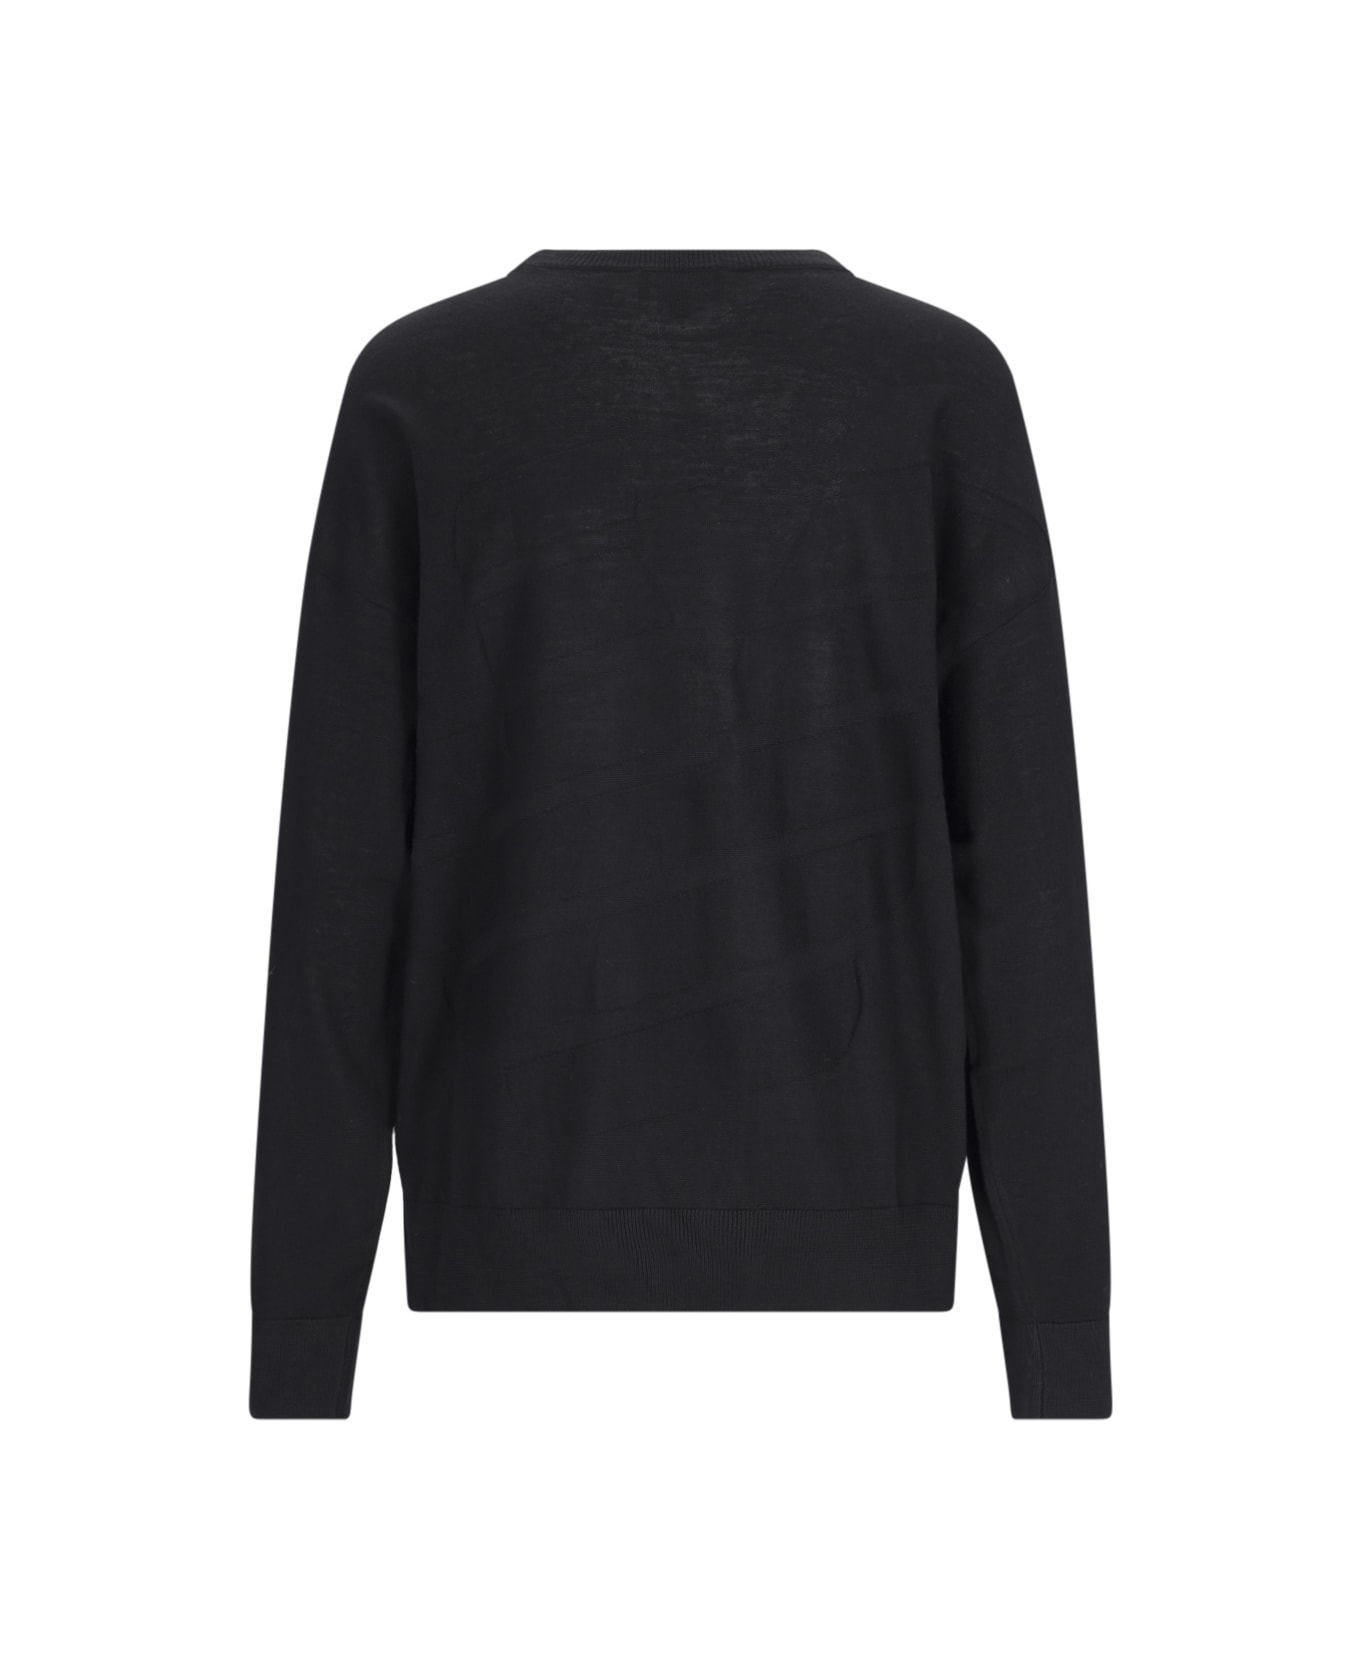 Emporio Armani Crew-neck Sweater - Black ニットウェア